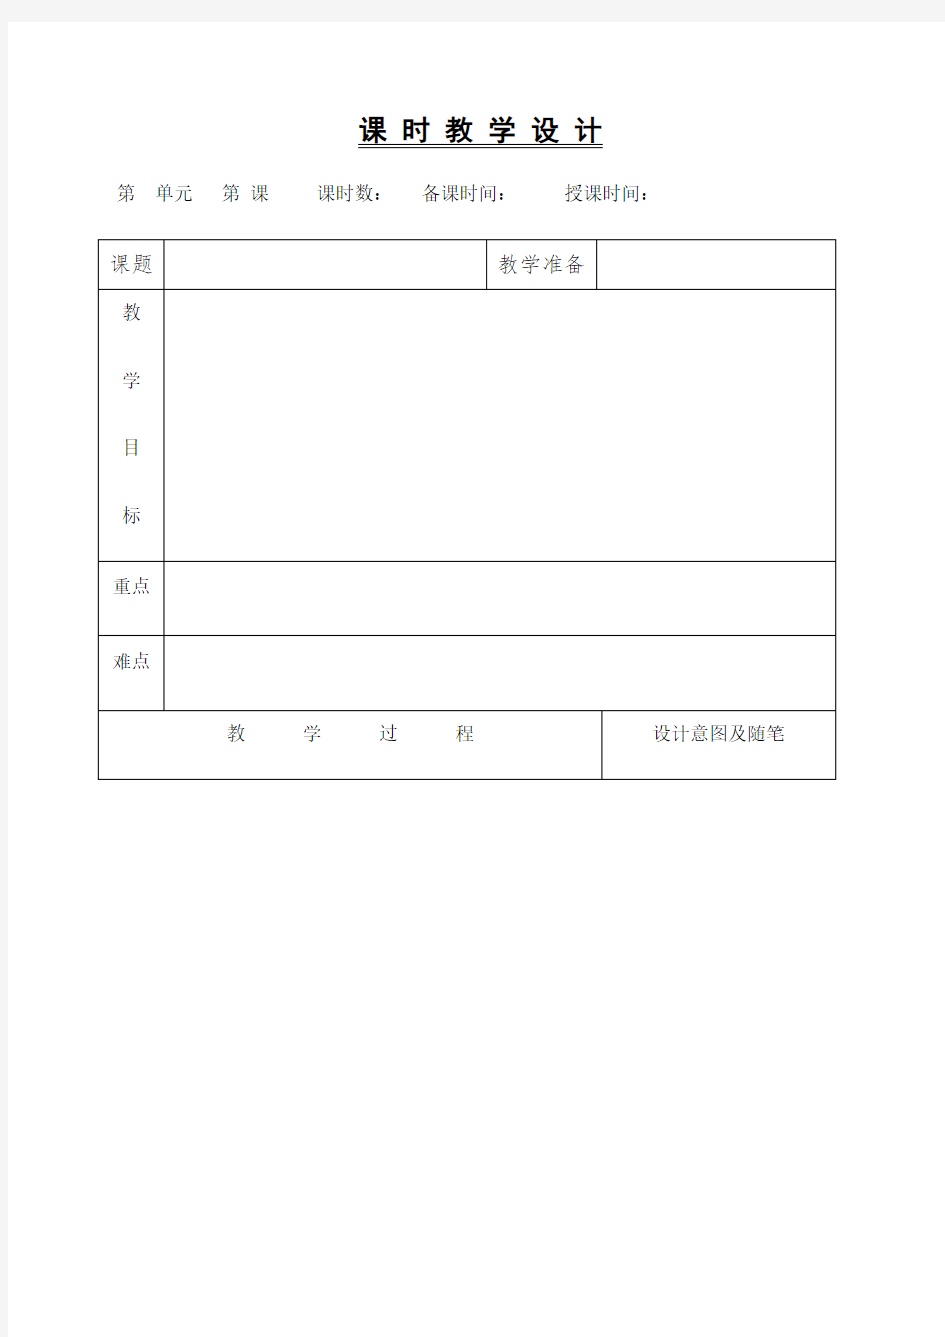 小学语文教案课程模板(表格)